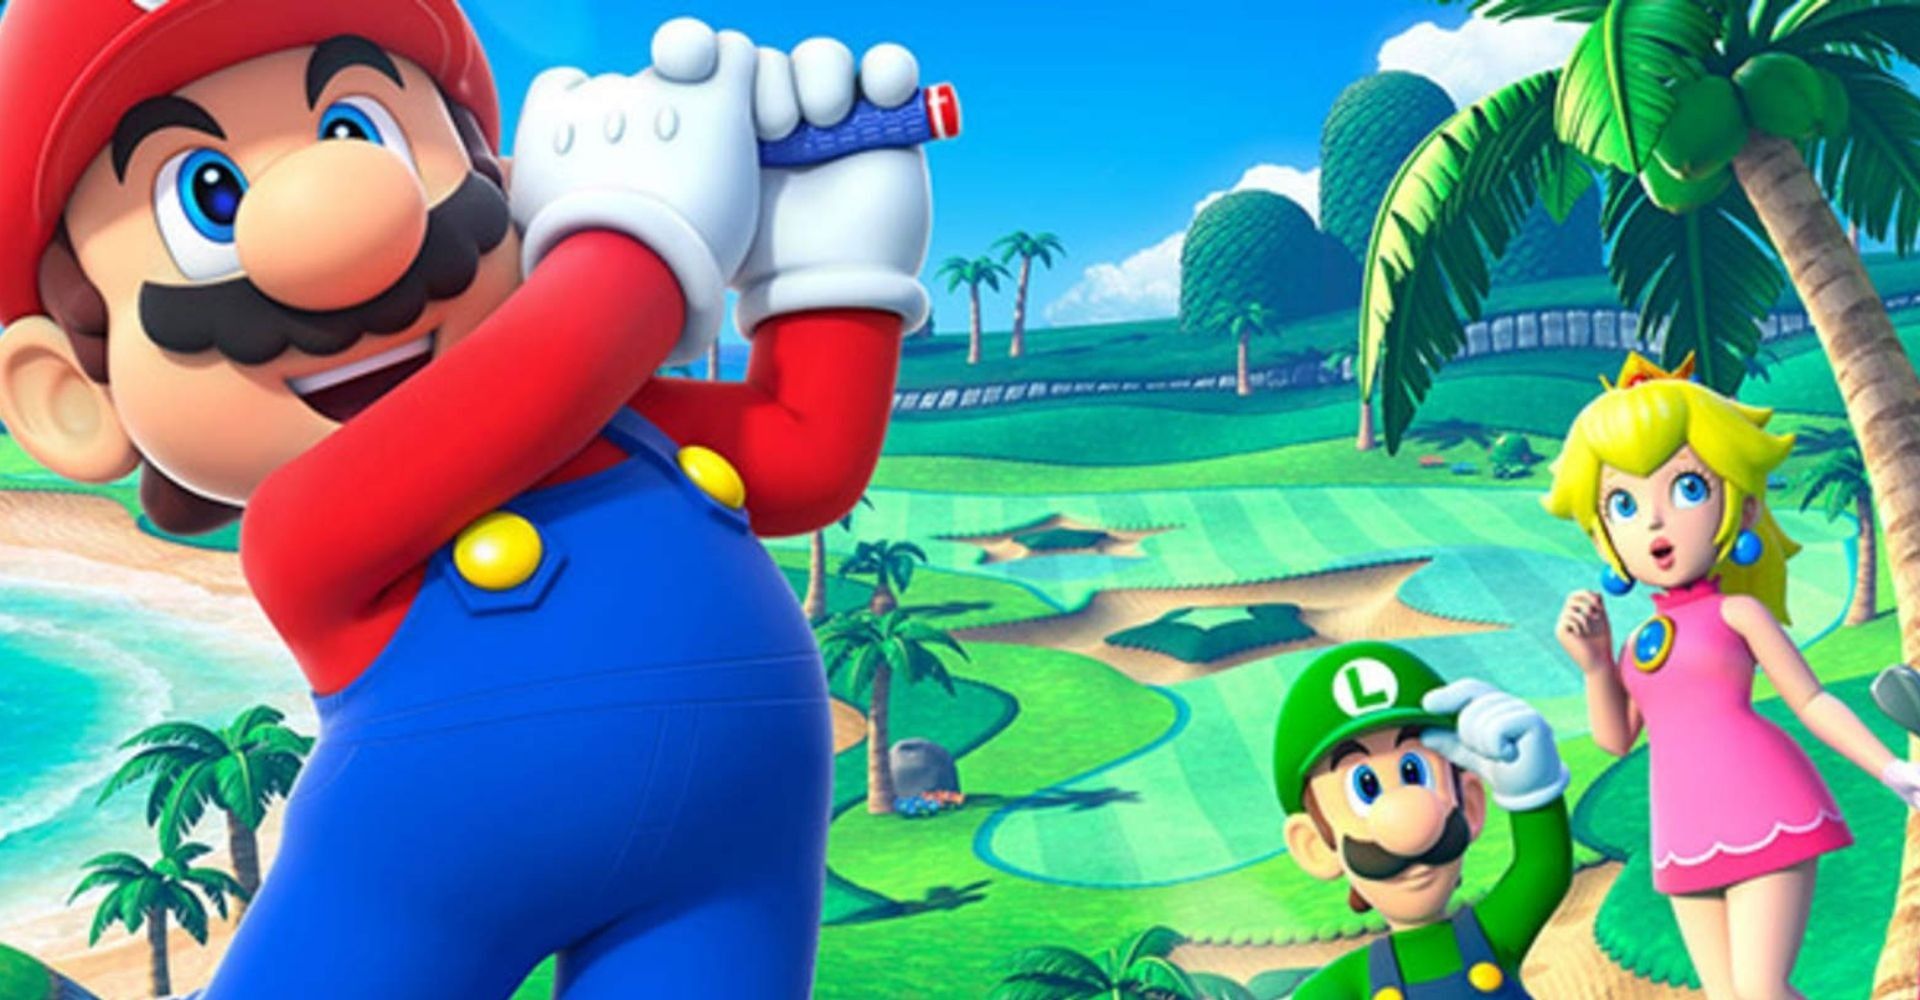 Luigi, and Peach shocked at Mario's swing in Mario Golf Super Rush